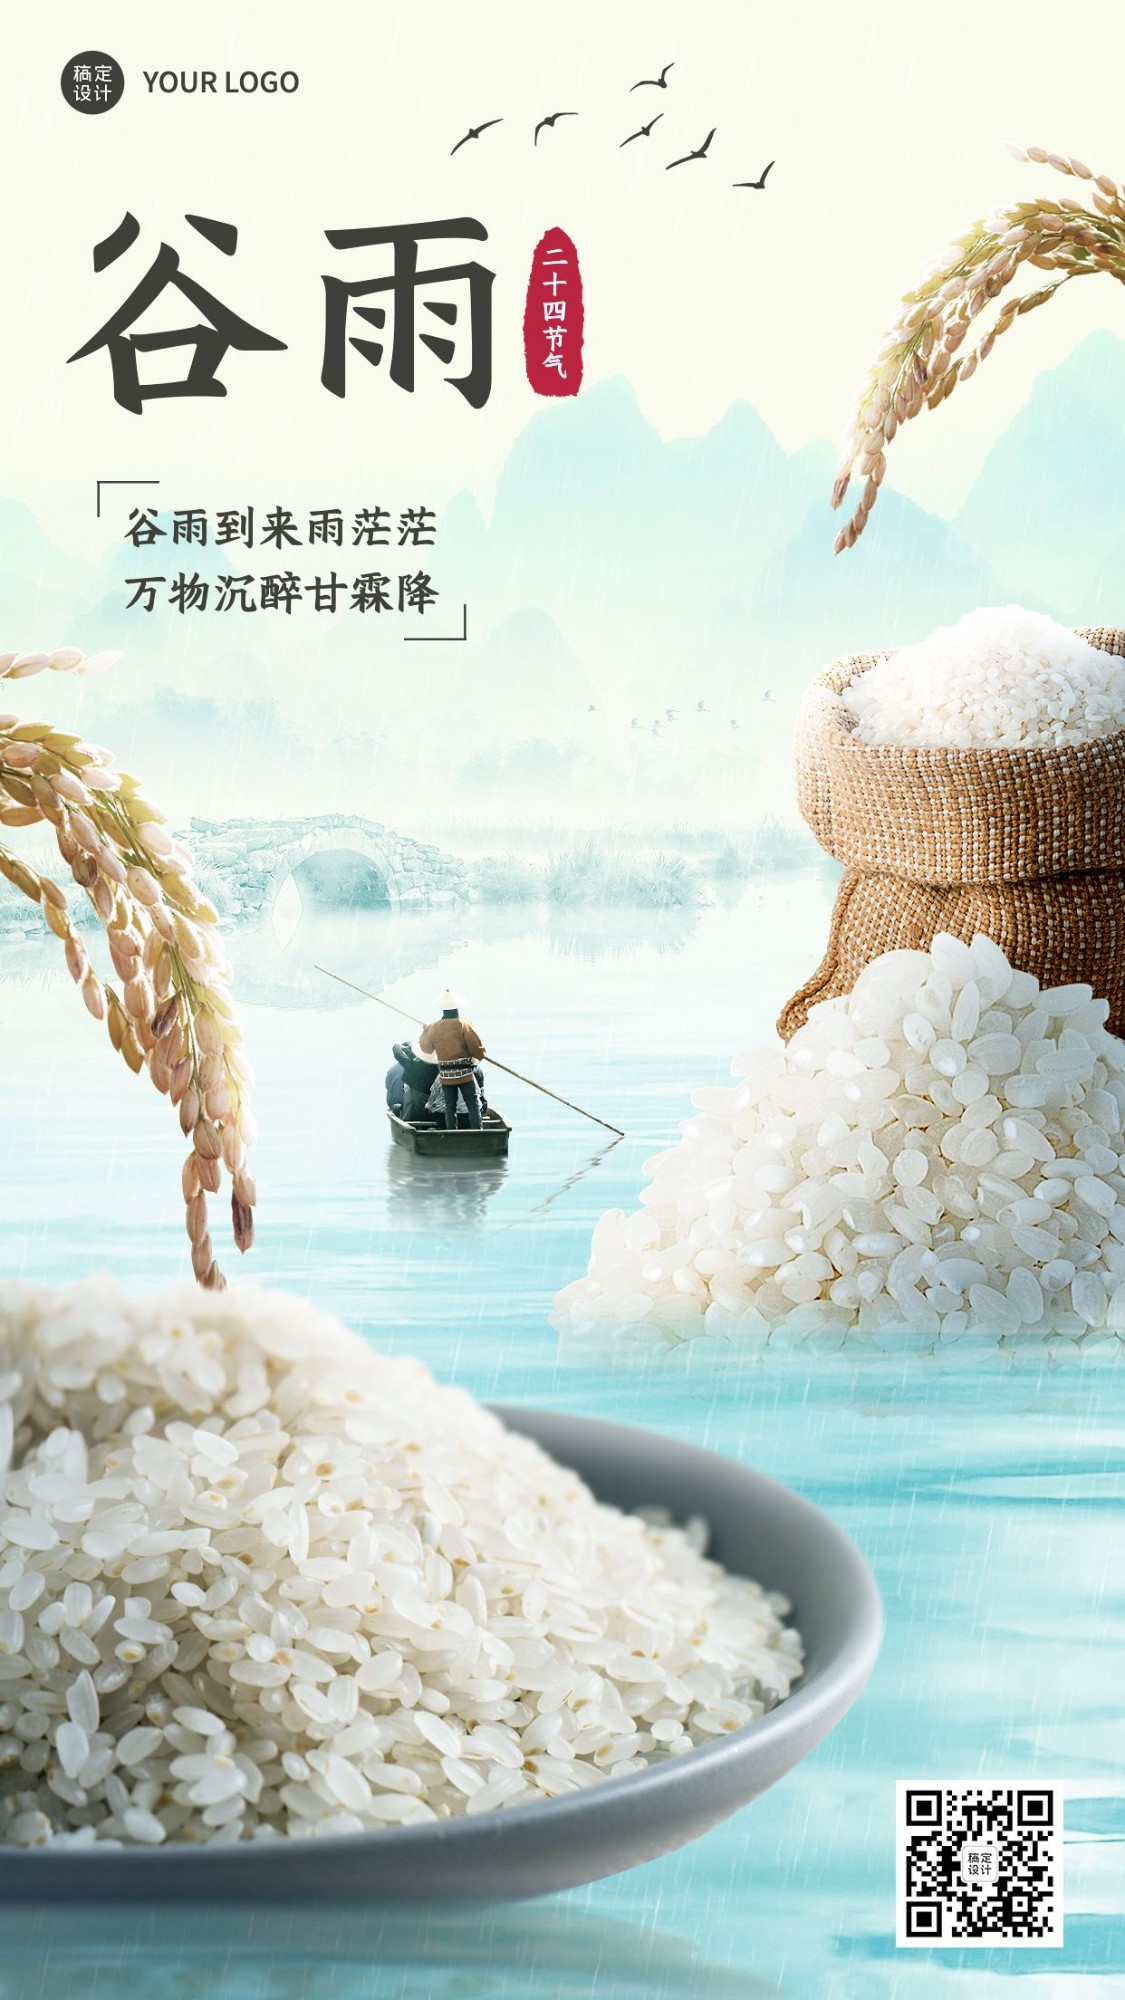 24节气套系谷雨节气祝福大米食品实景微缩手机海报预览效果